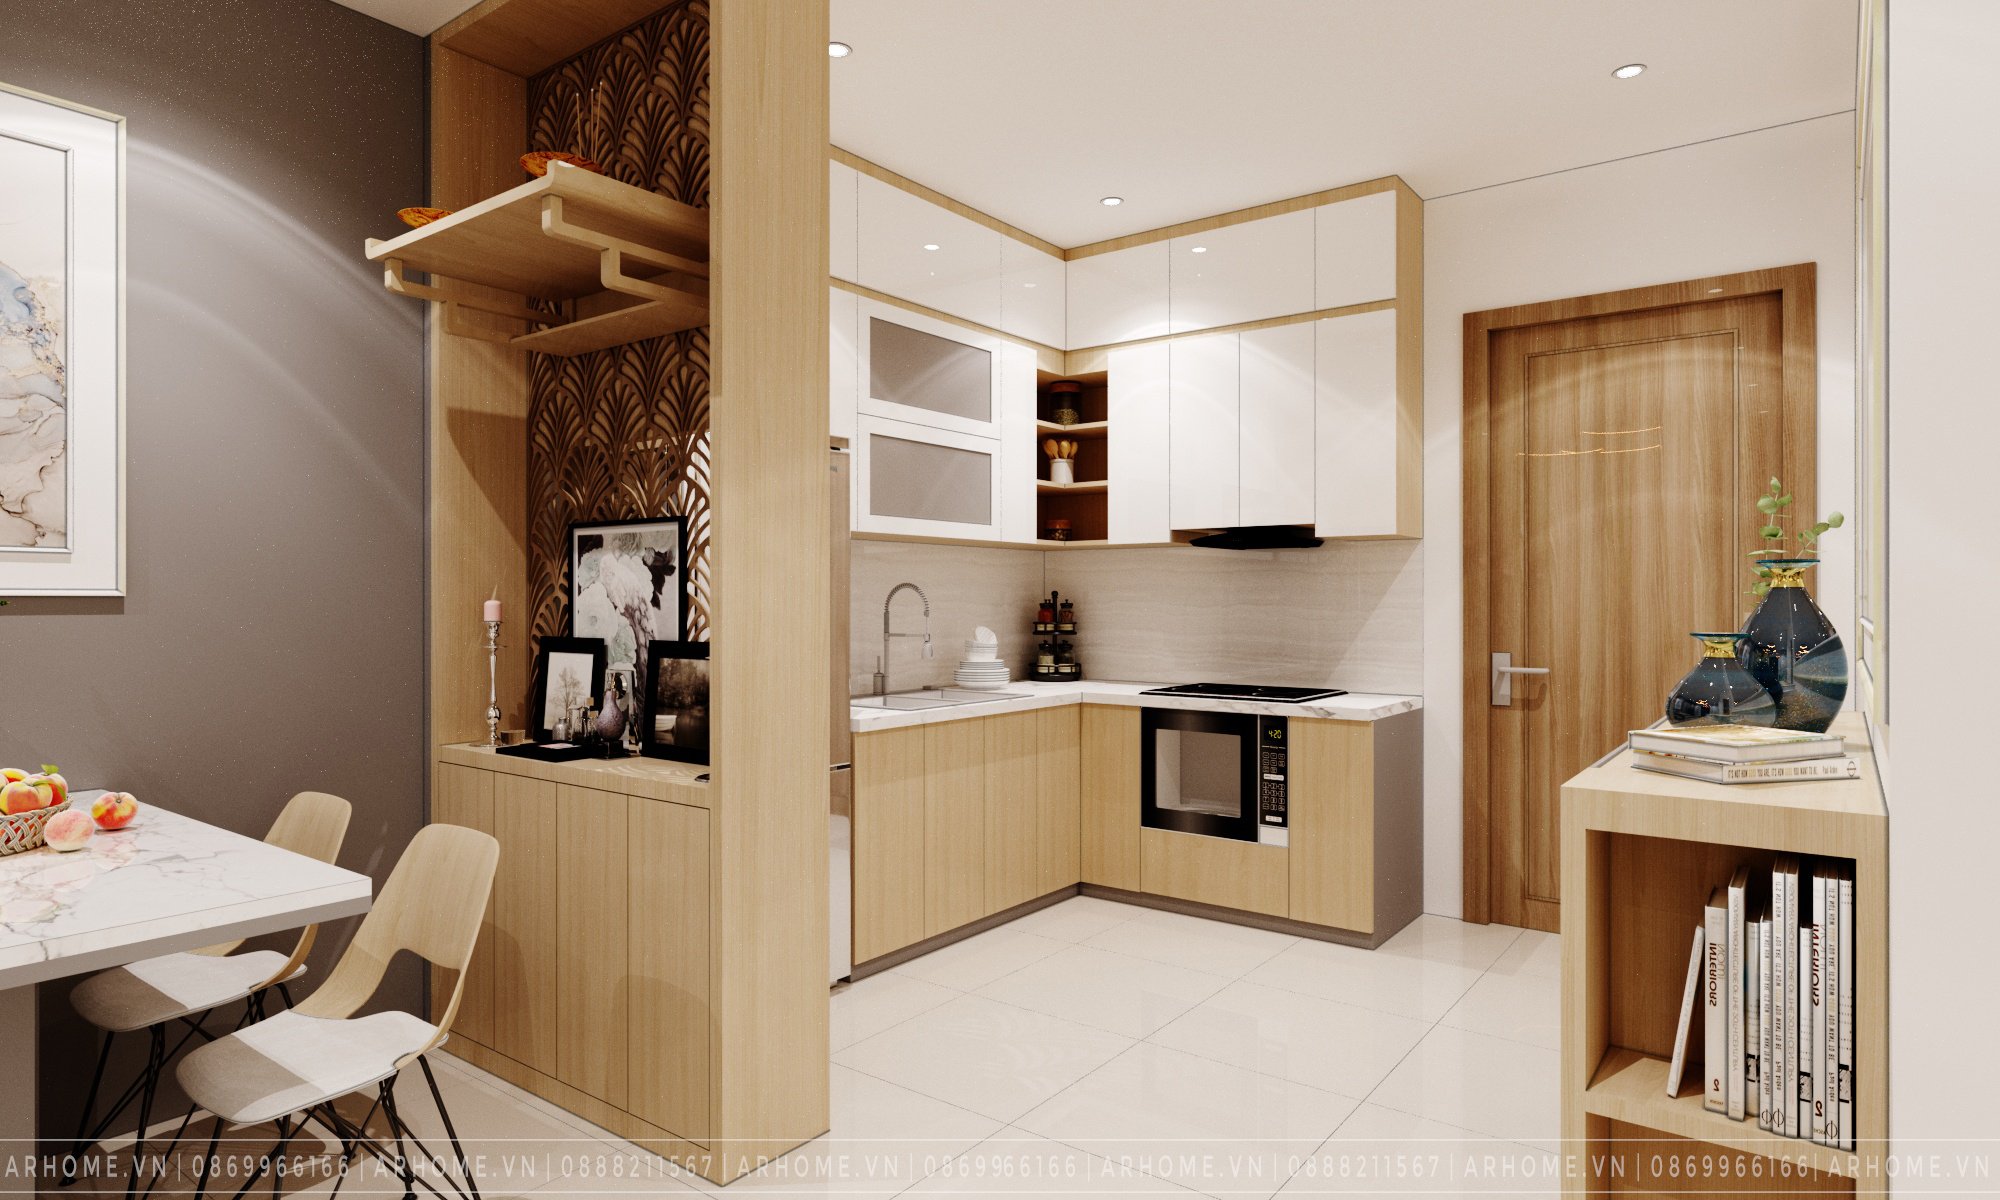 Thiết kế nội thất Chung Cư tại Hà Nội Thiết kế nội thất căn hộ 2 phòng ngủ 55m2 Vinhomes Smart City 1609236483 1